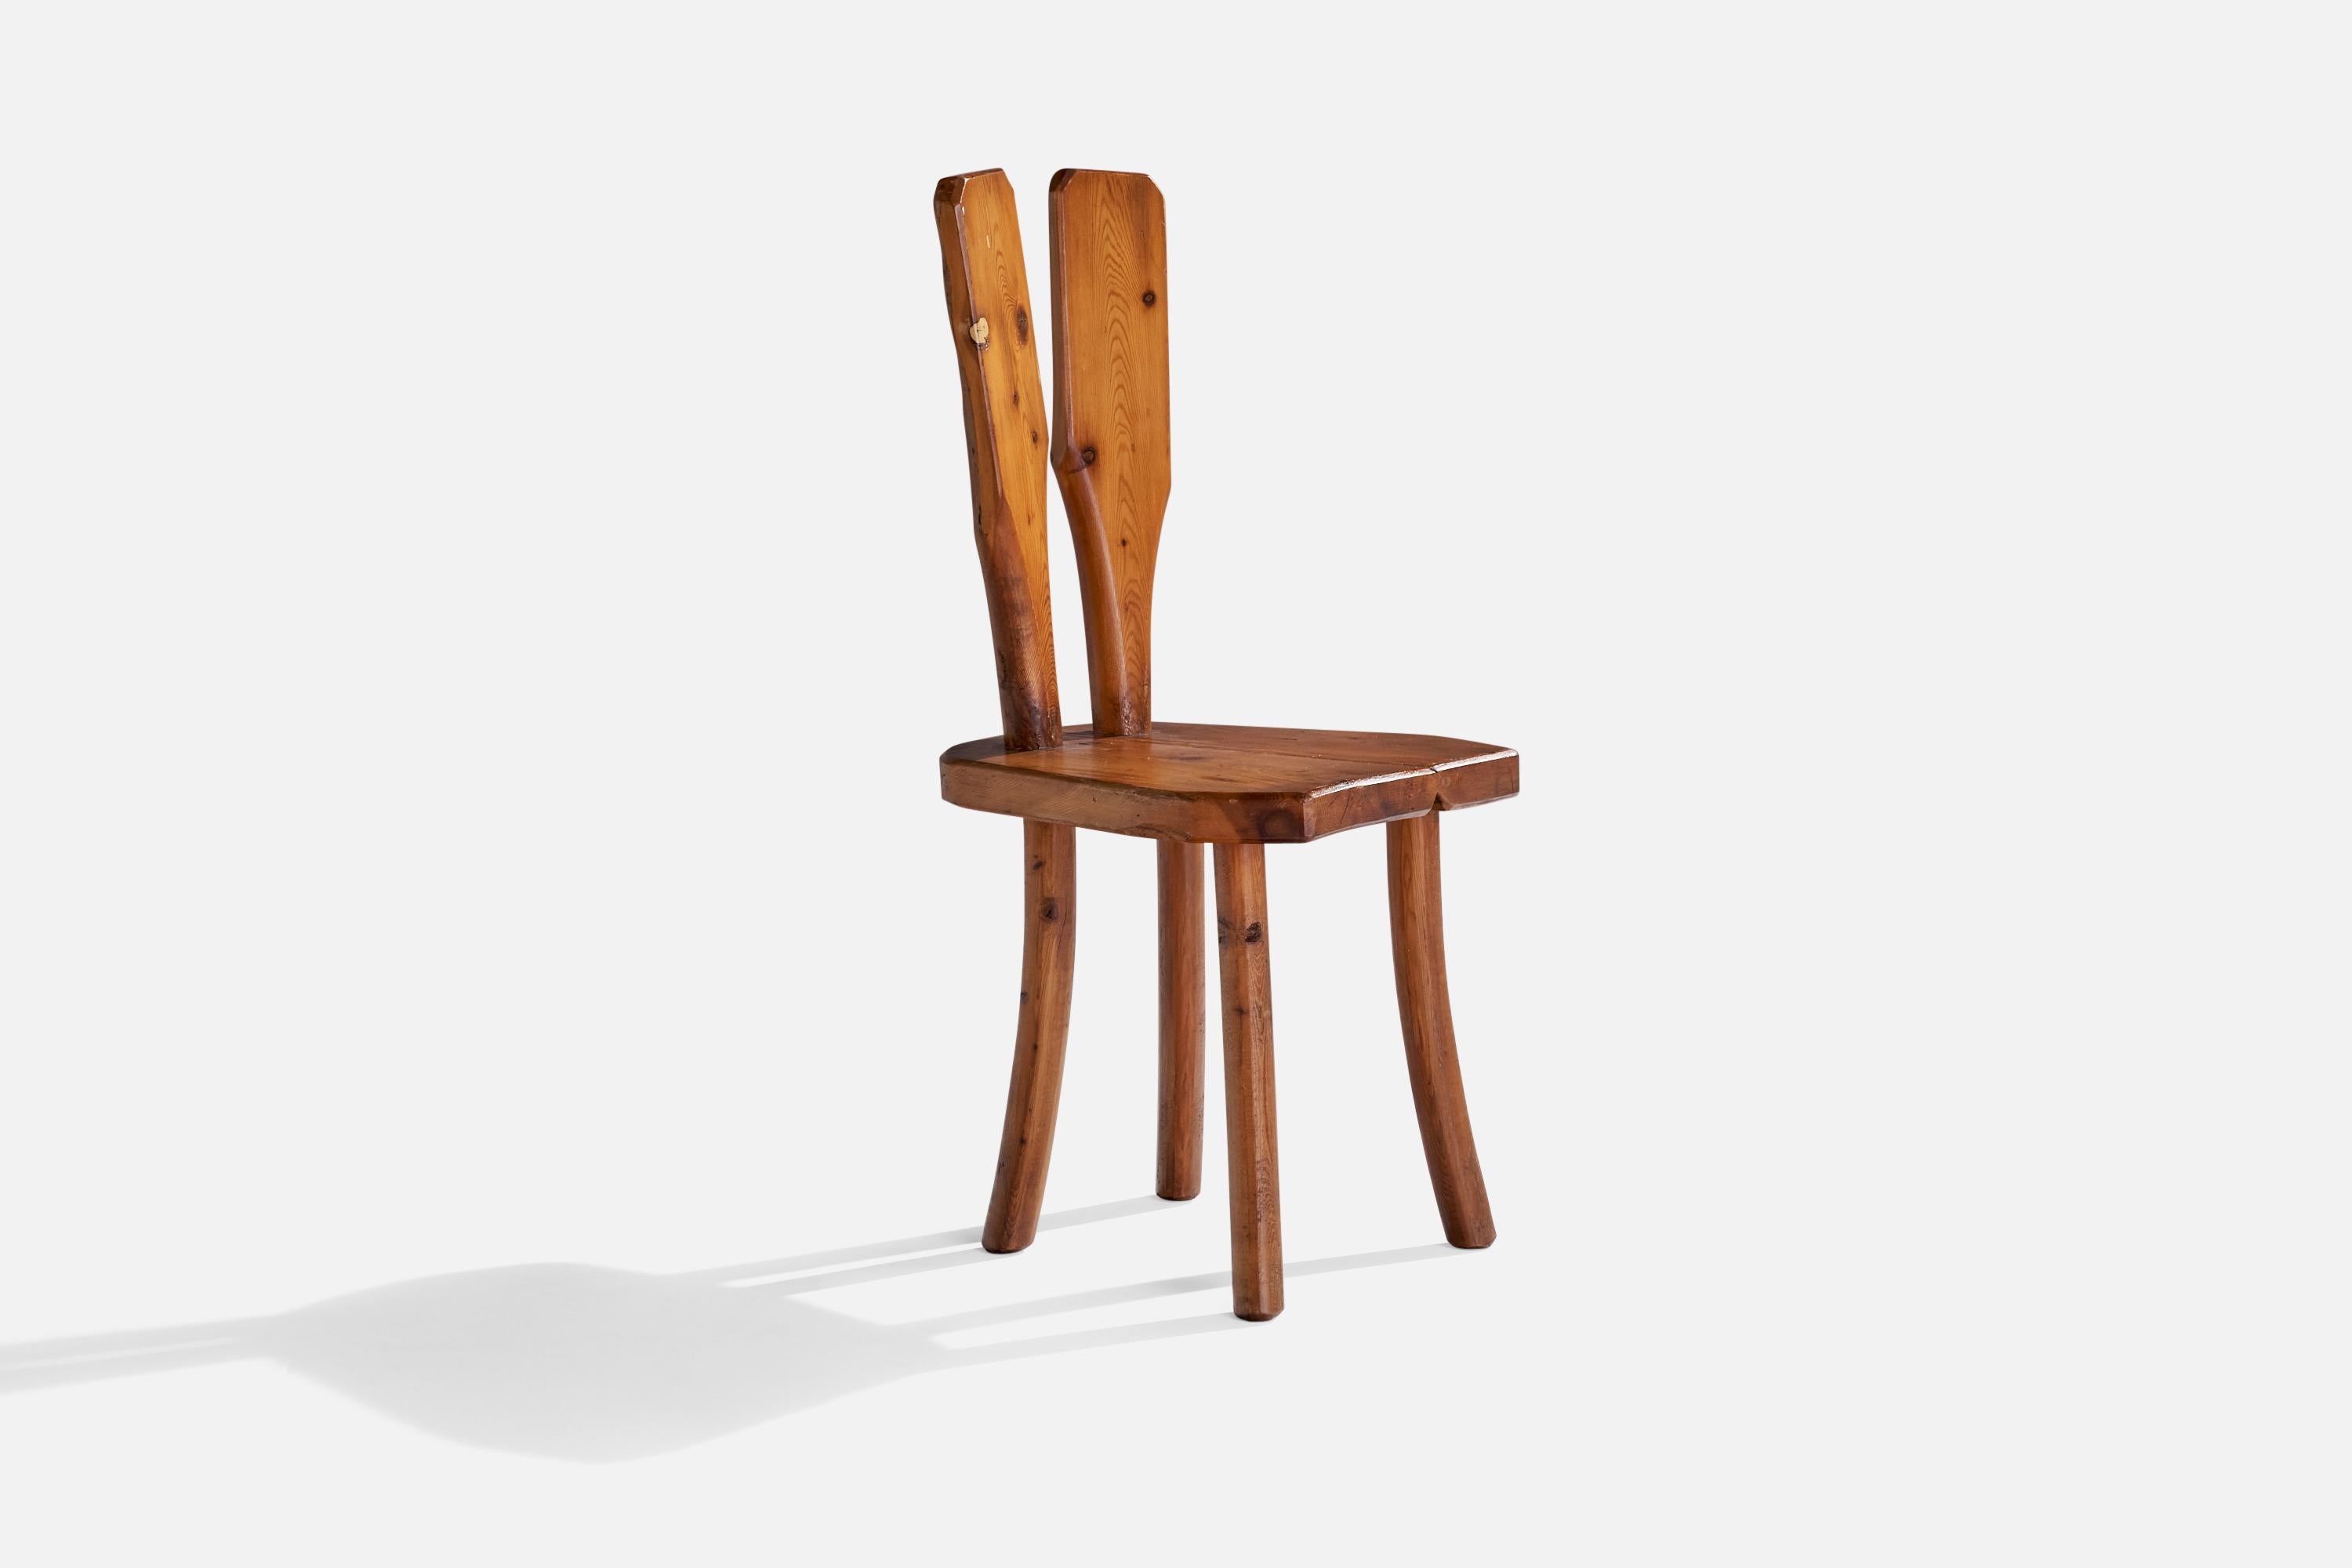 Ein Beistellstuhl aus Kiefernholz, entworfen und hergestellt in Italien, 1950er Jahre.

Sitzhöhe 17,75